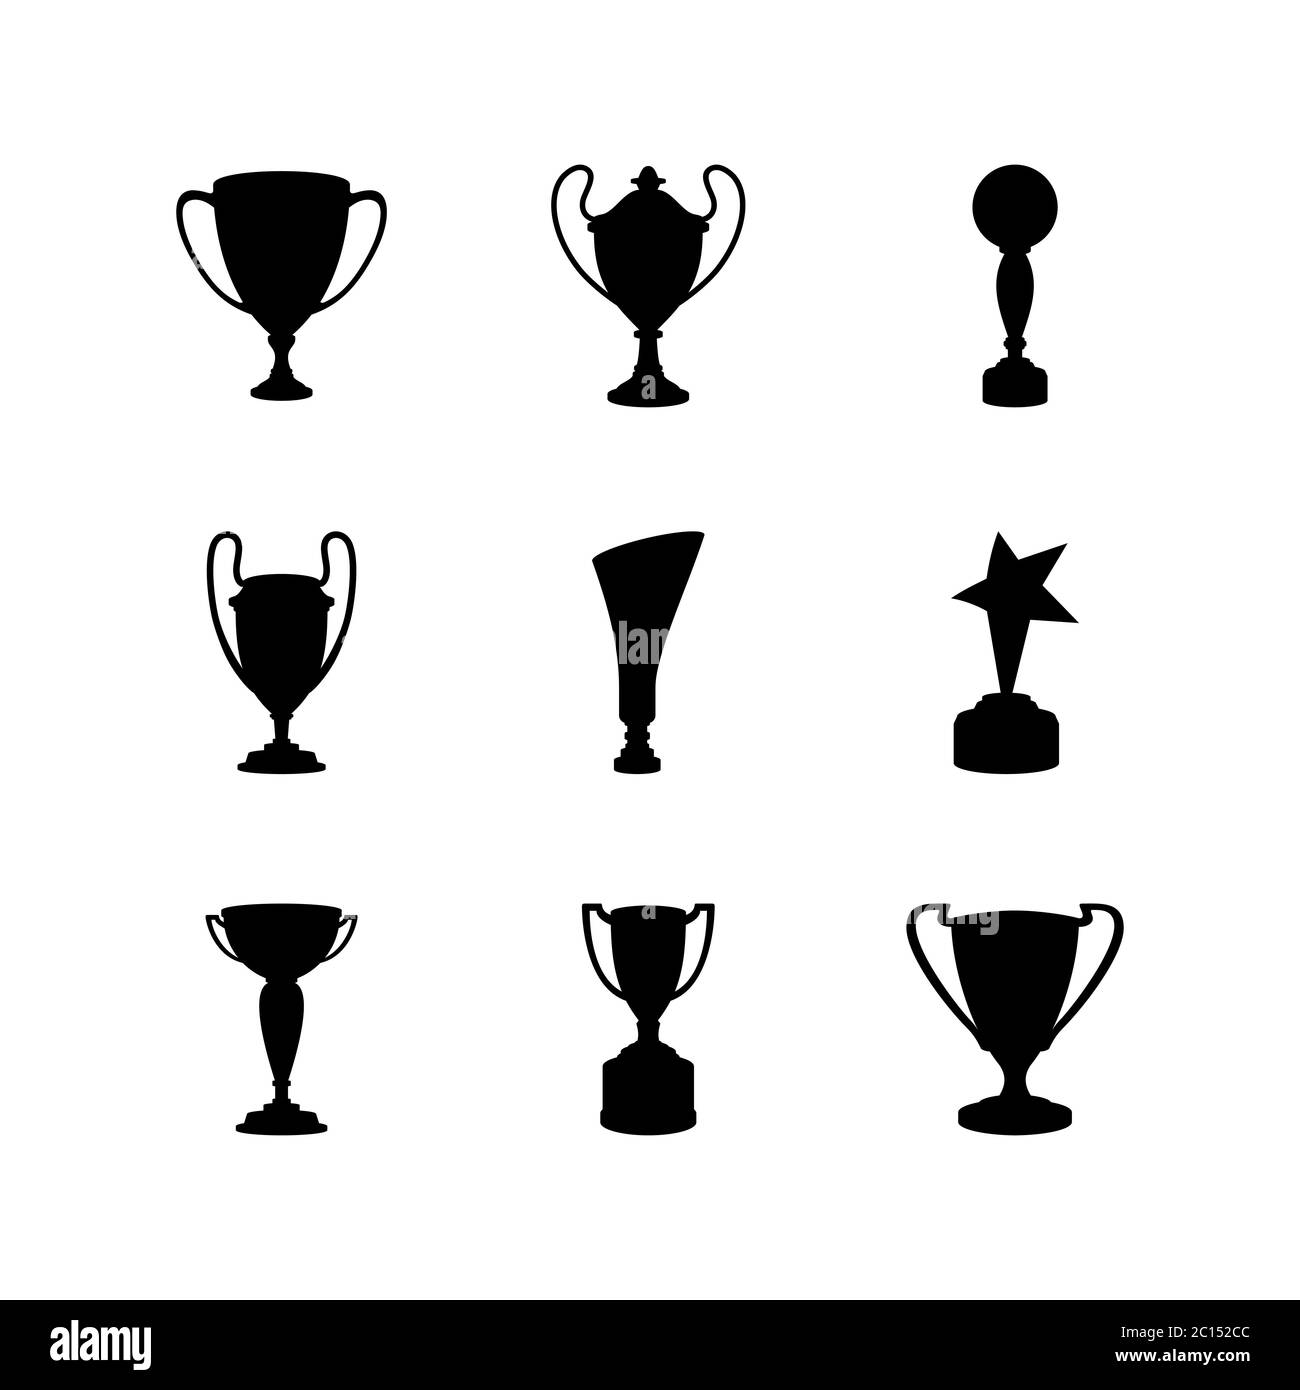 silhouettes de différentes variations de trophées pour le vainqueur d'un championnat. Trophée de coupe comme prix de champion. Illustration de Vecteur